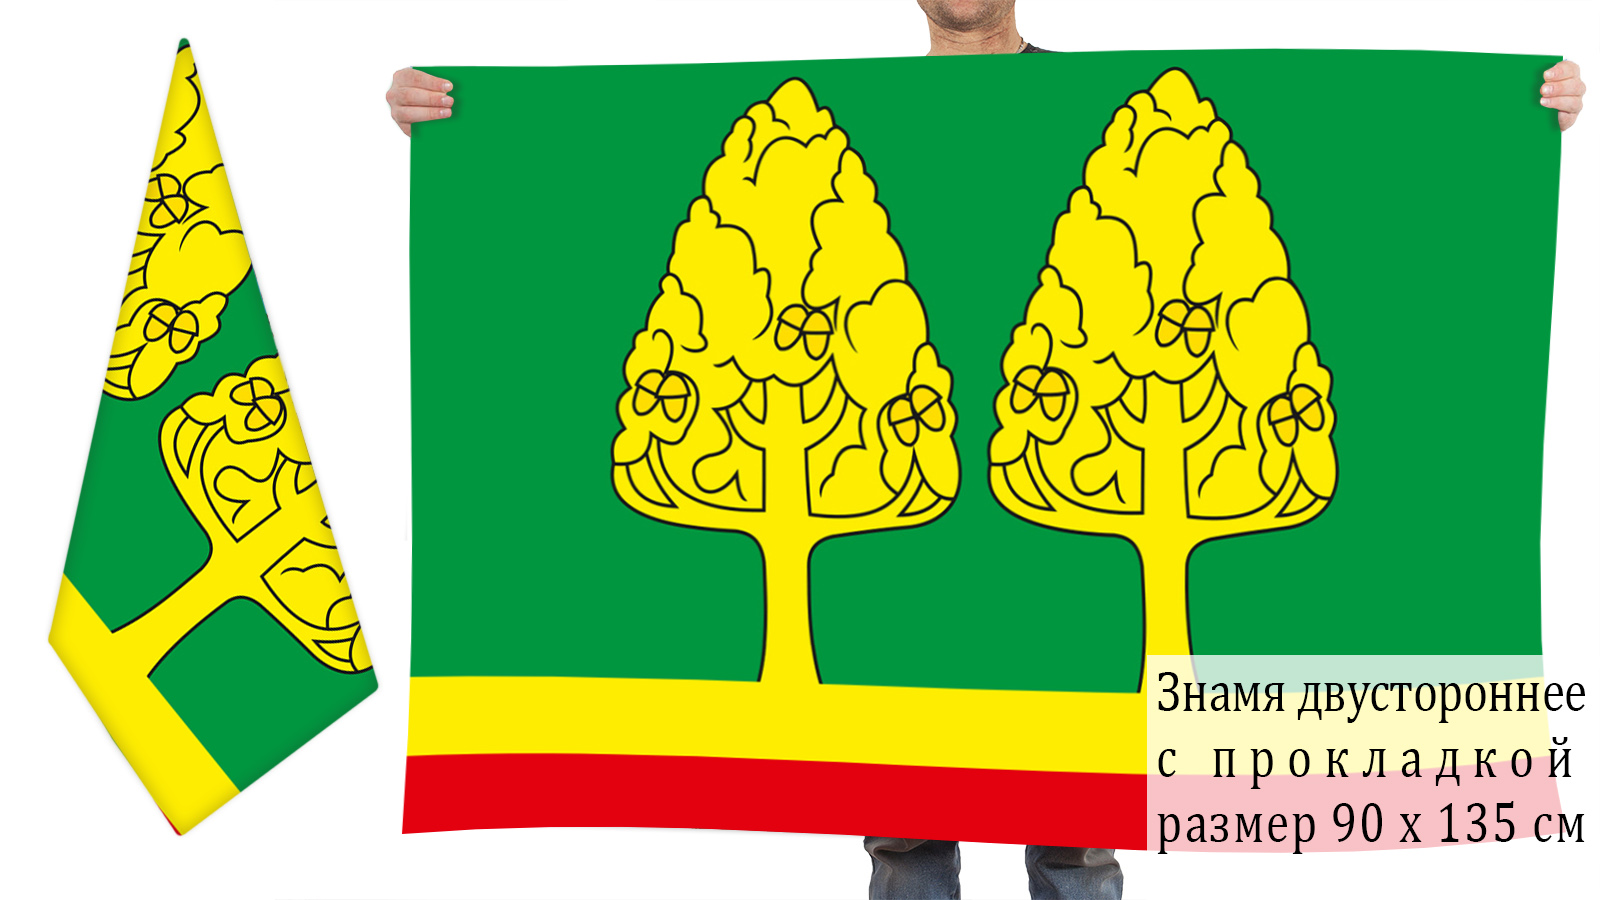 Двусторонний флаг Становлянского района